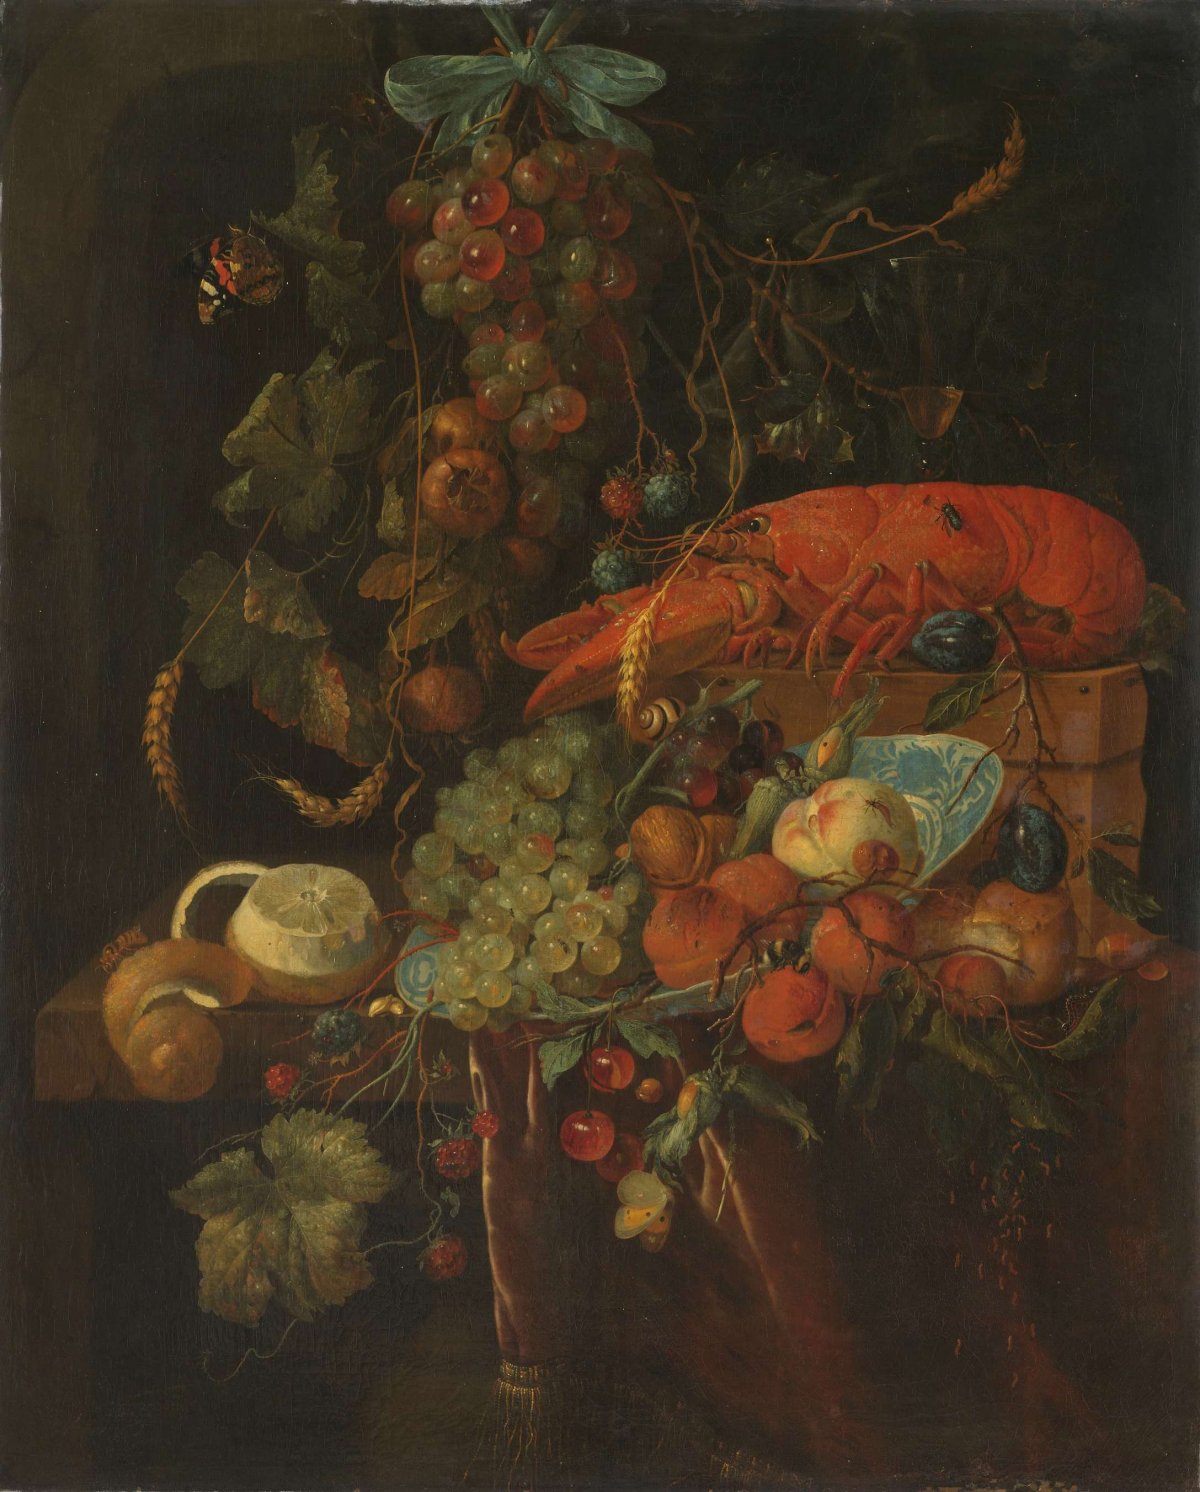 Still Life with Fruit and a Lobster, Jan Davidsz. de Heem, 1640 - 1700